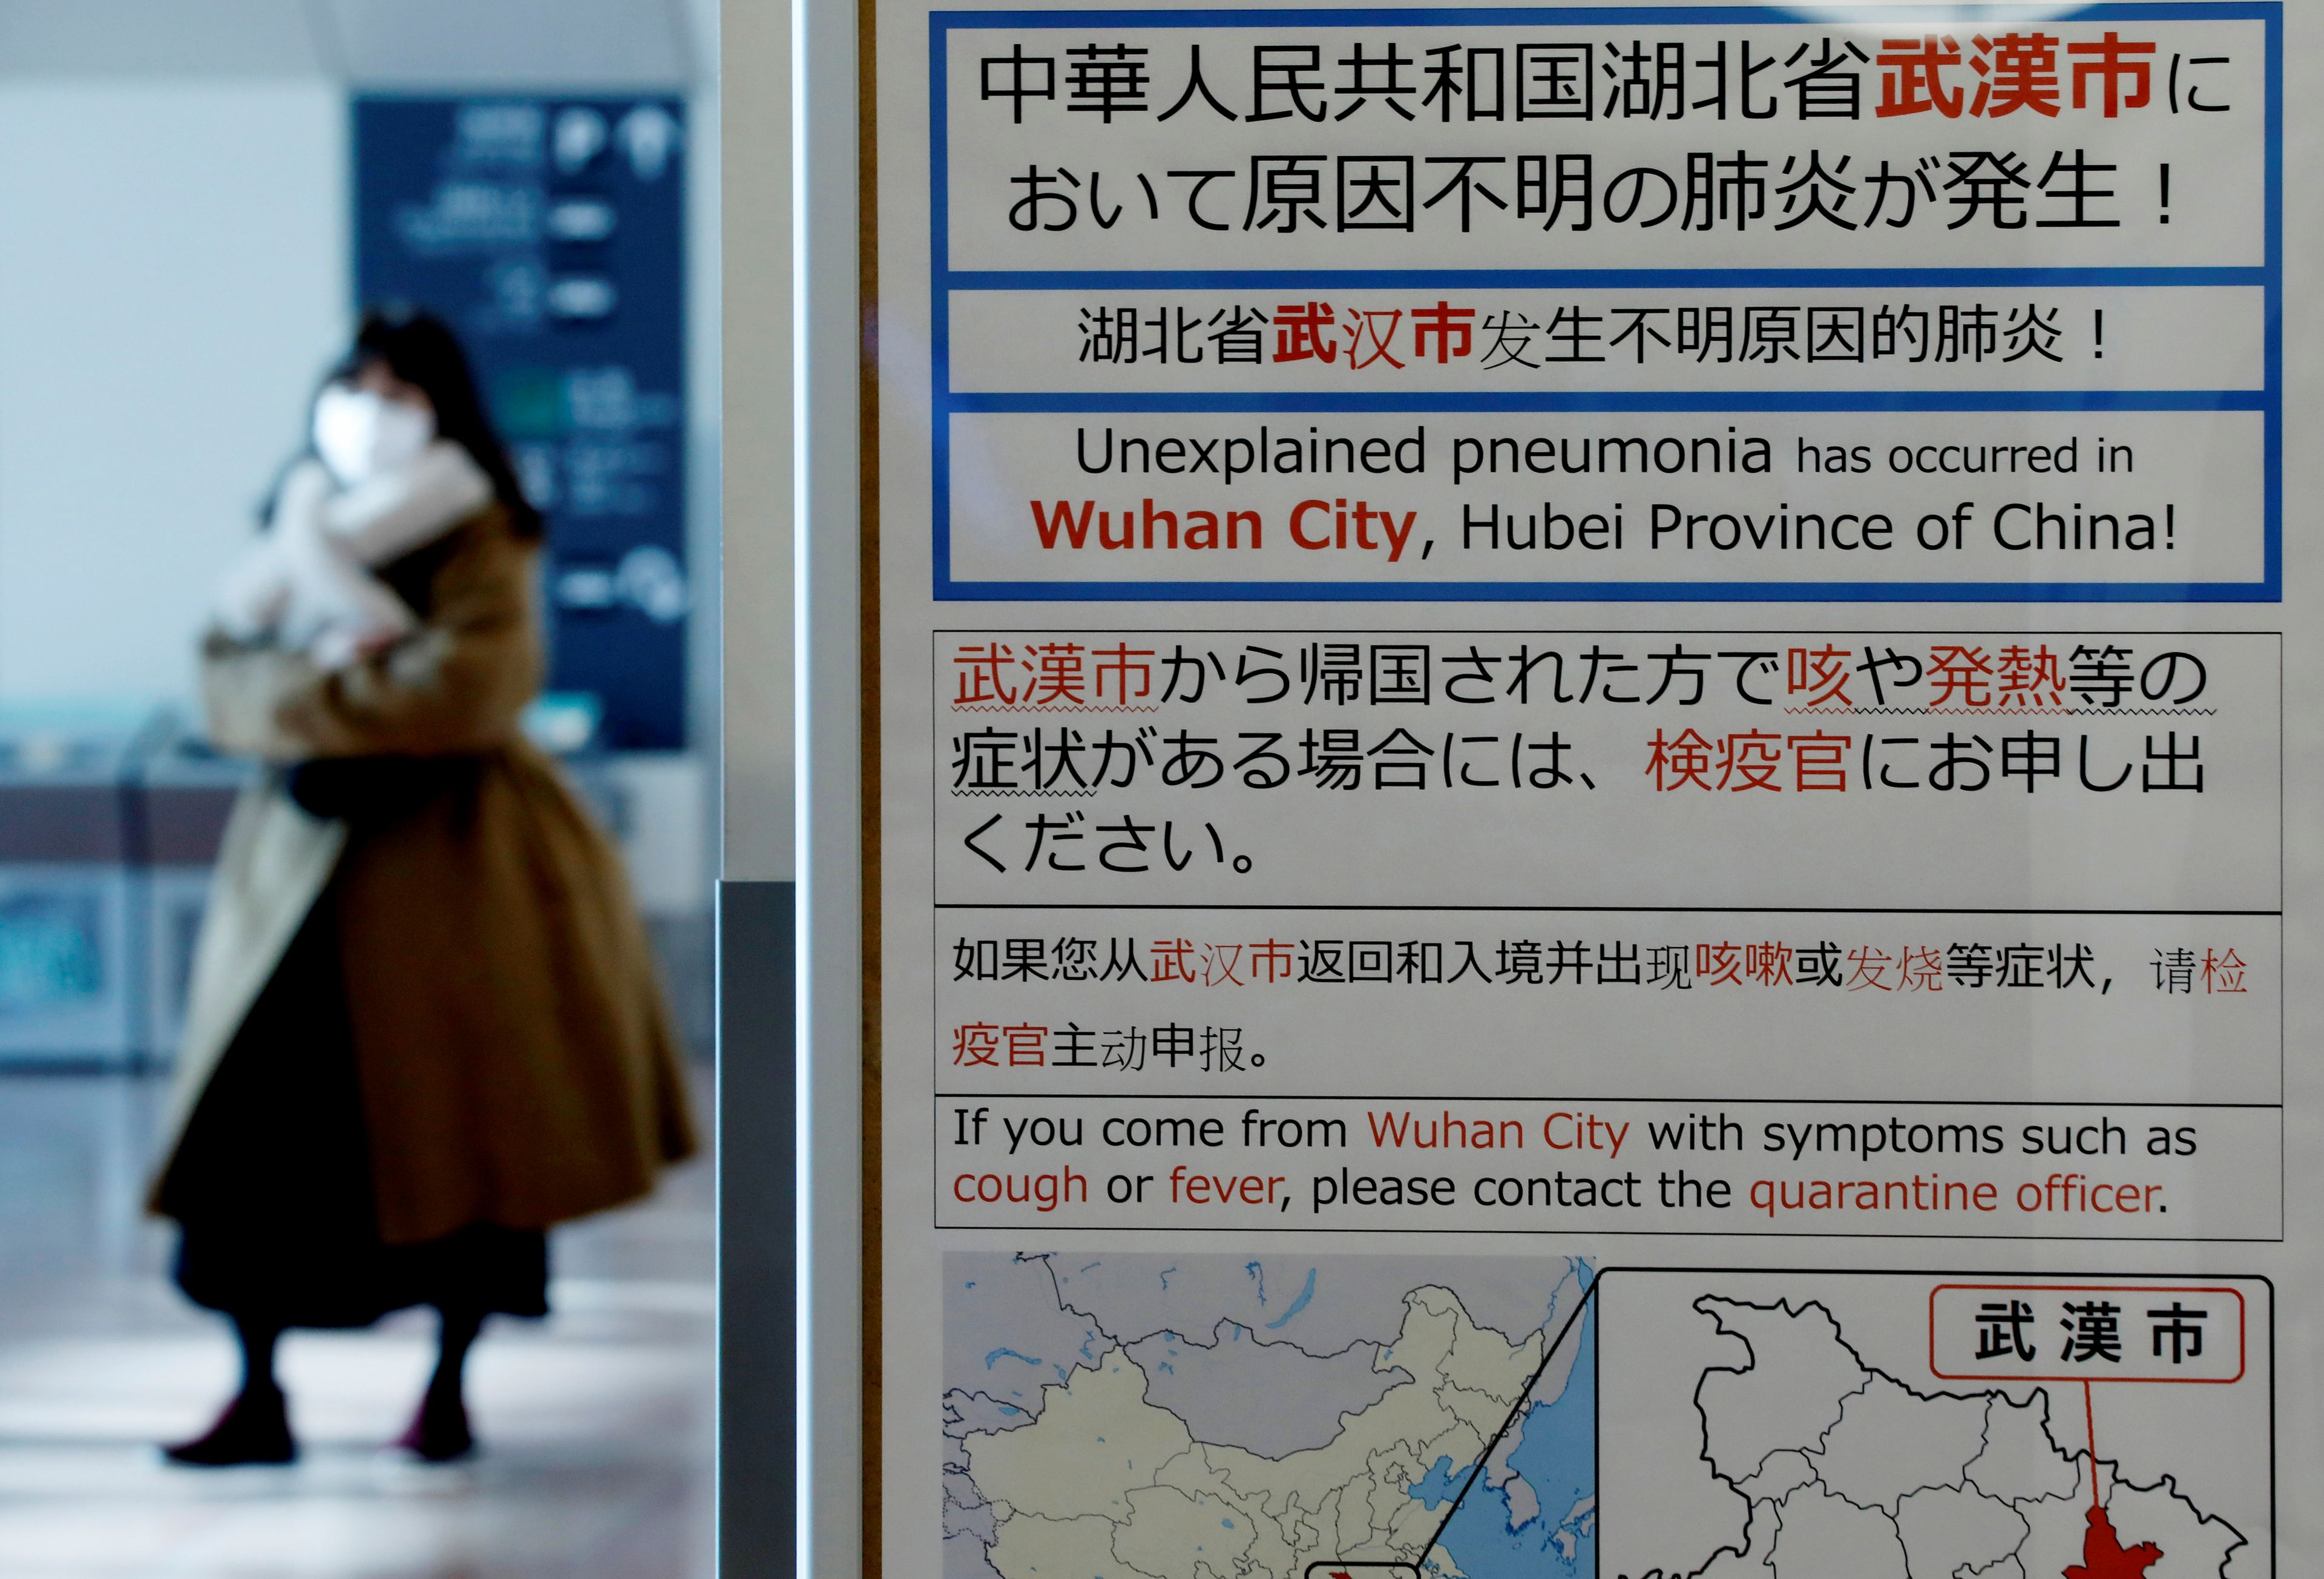 Un cartel en el aeropuerto de Tokio avisa de una "neumonía inexplicable" en Wuhan.